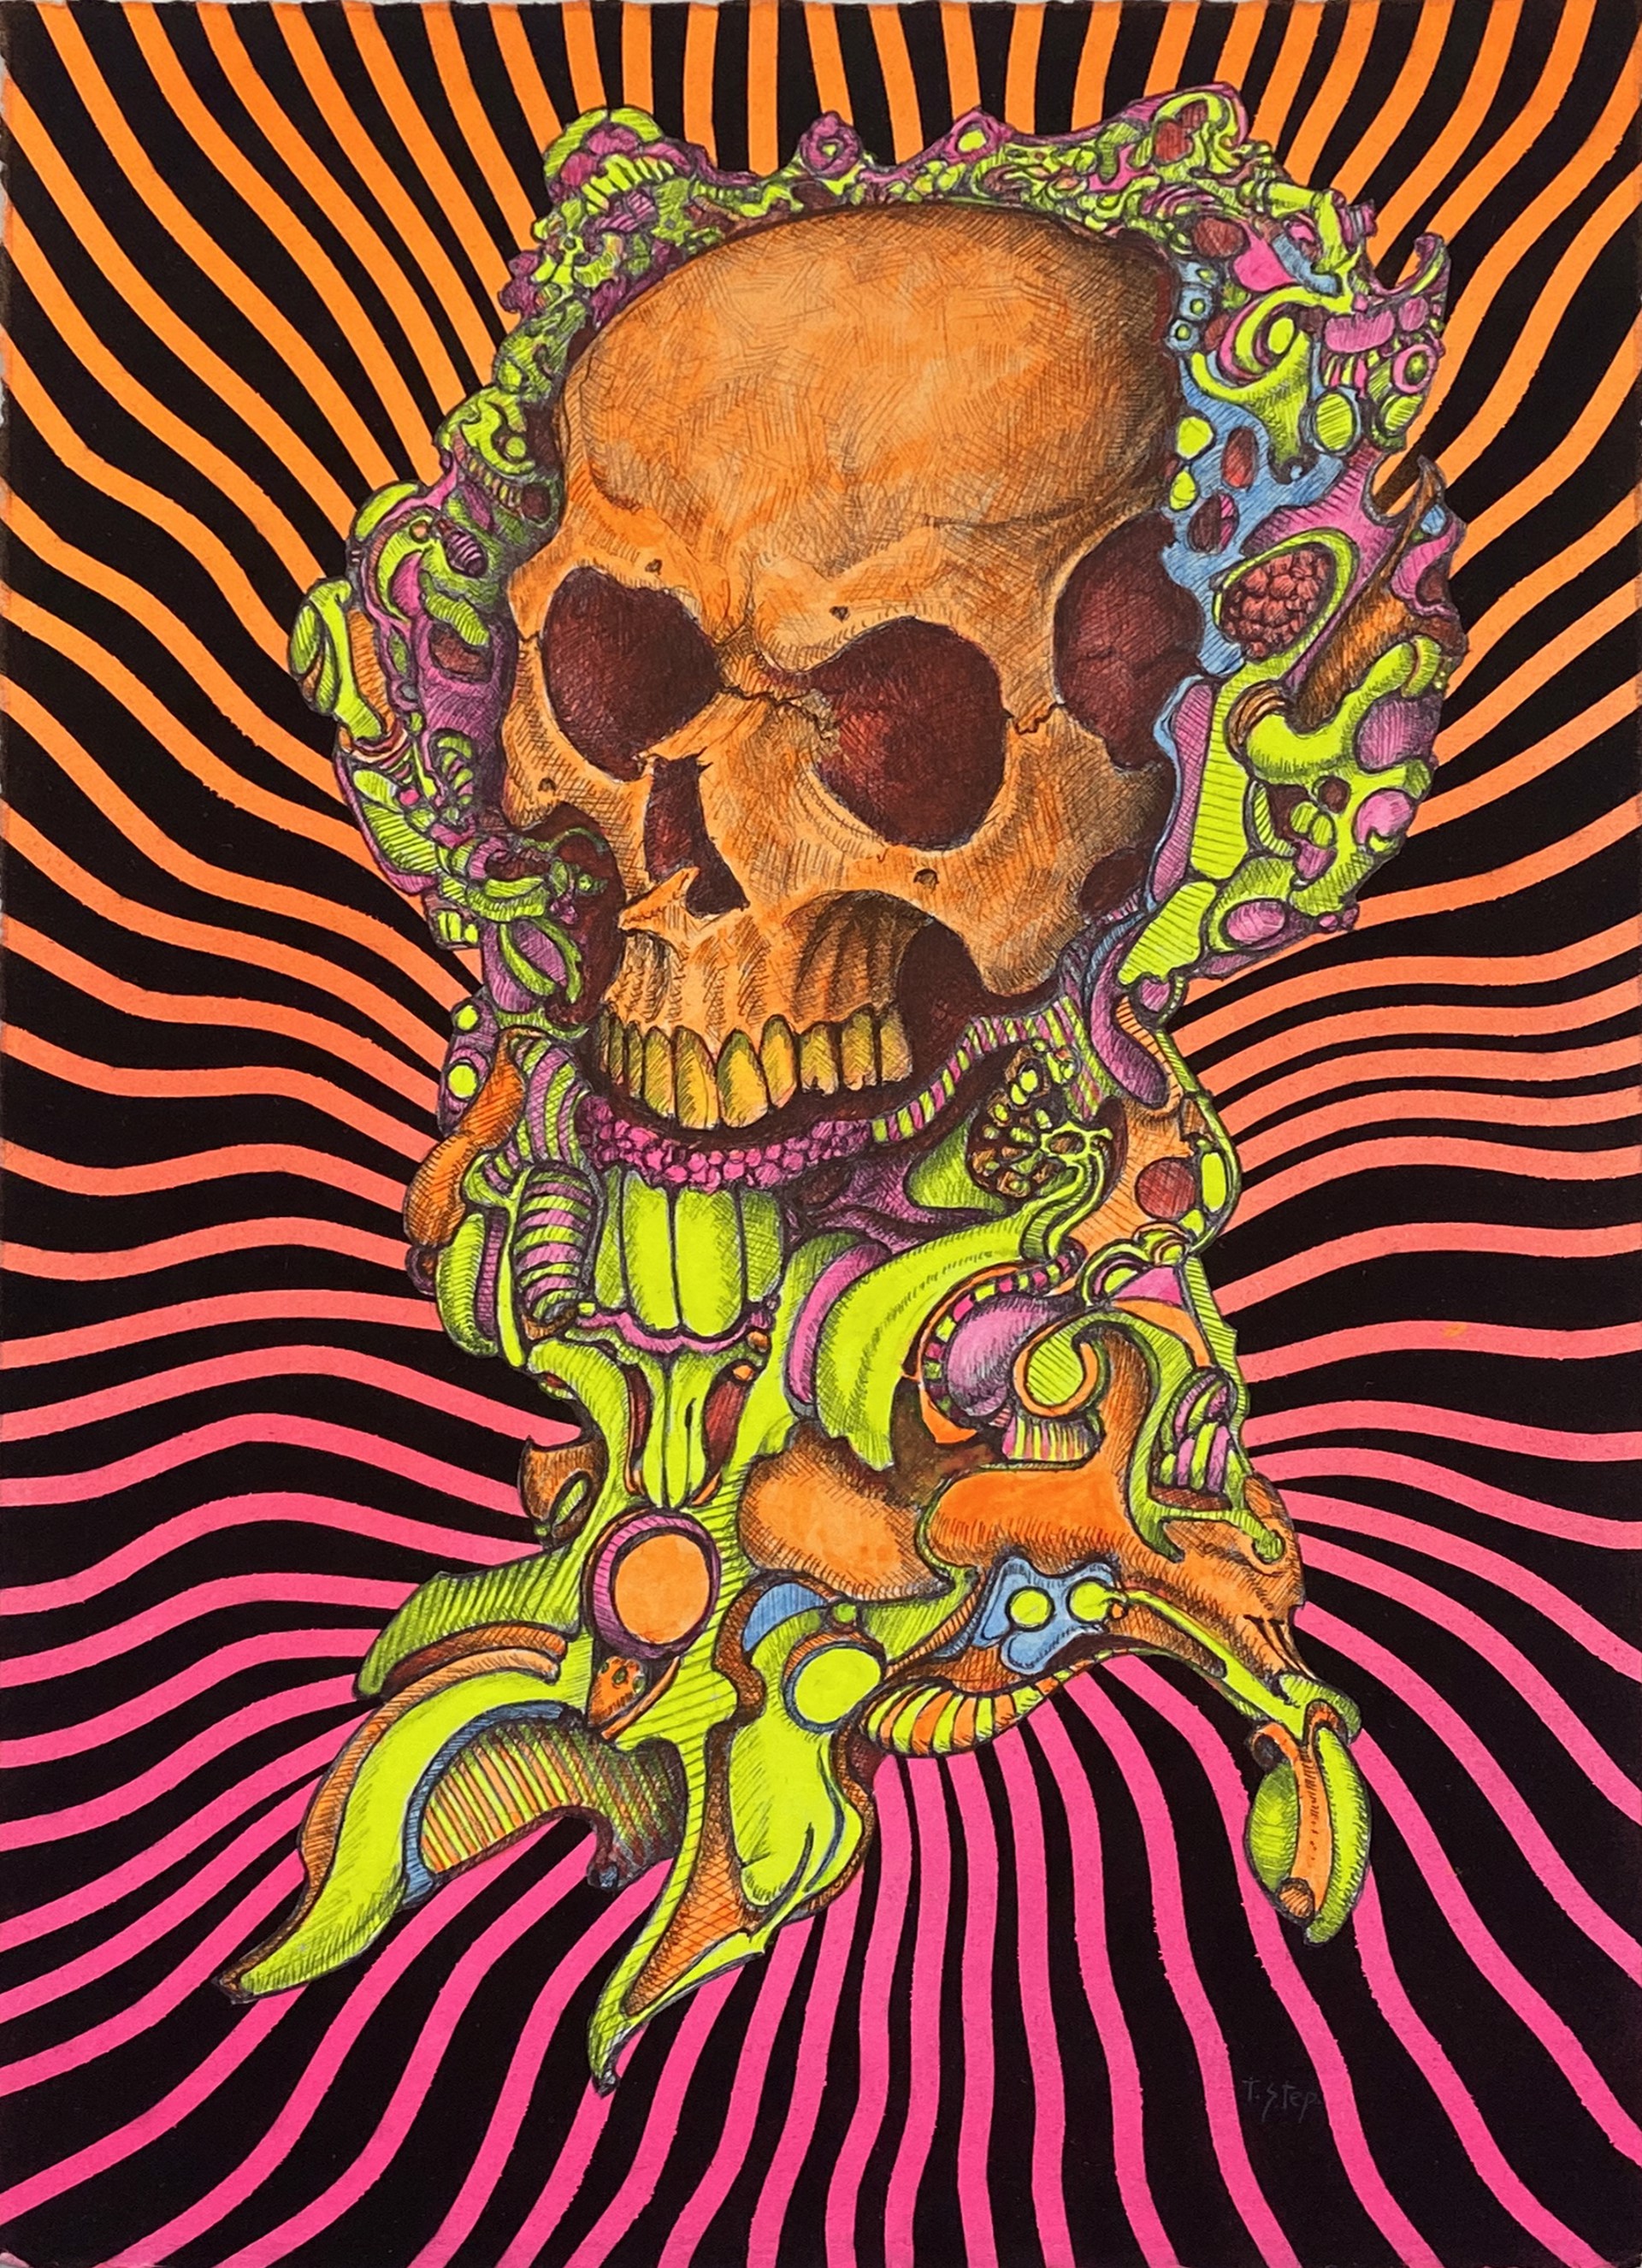 Skull Study #1 by Tom Stephenson